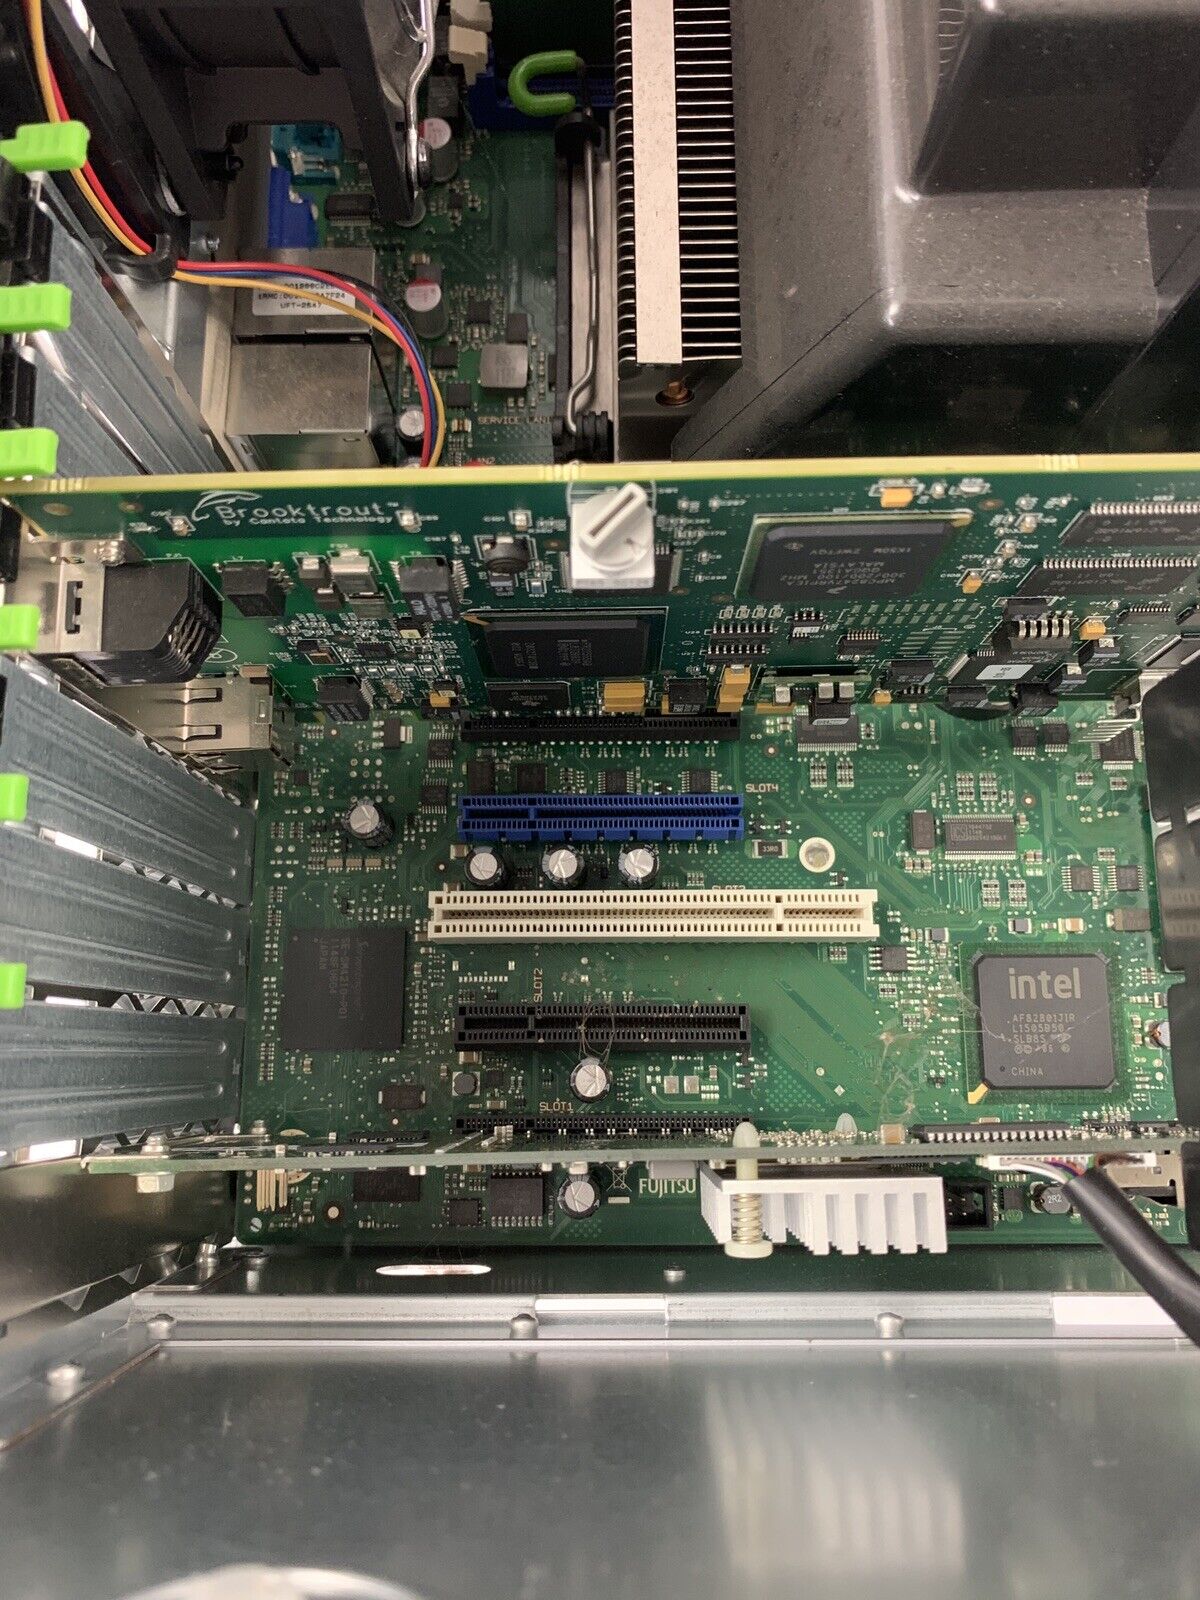 Fujitsu Primergy TX200 S6 Server Quad Core E5606 2.13 GHz 4 GB Ram No HDD No OS